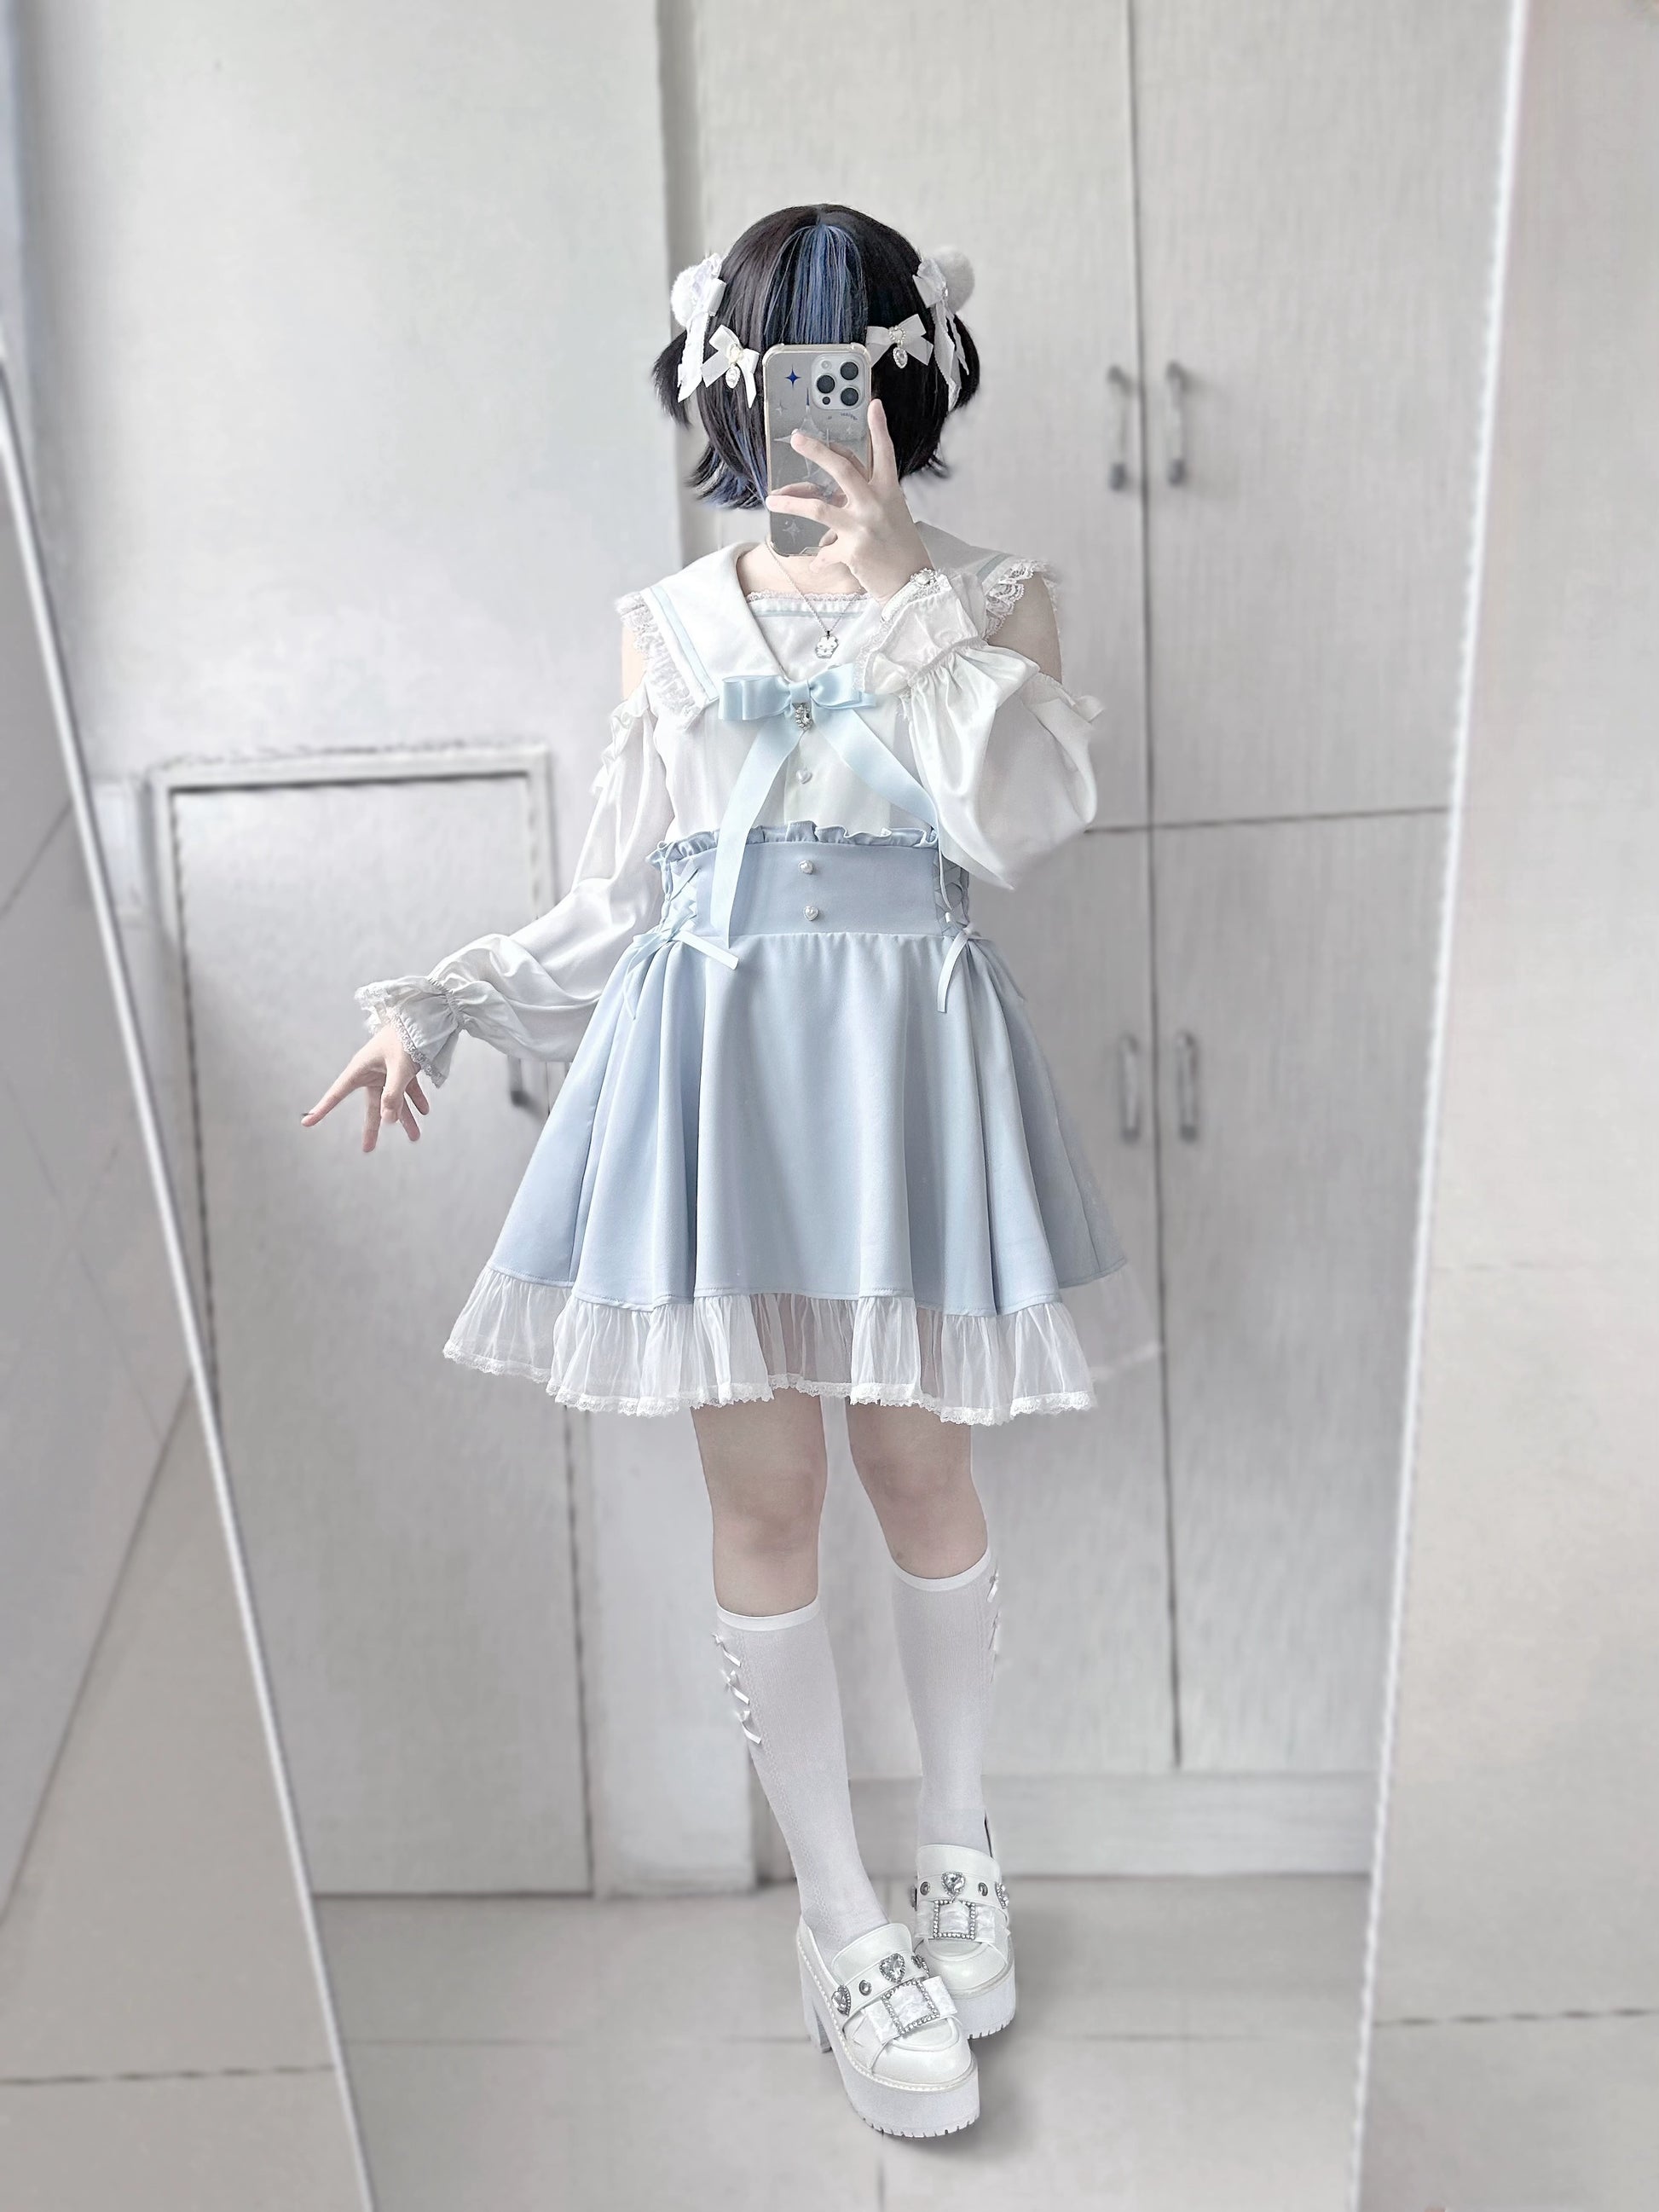 Jirai Kei Skirt Sweet Pink Blue Skirt With Flounce Hem 35800:504096